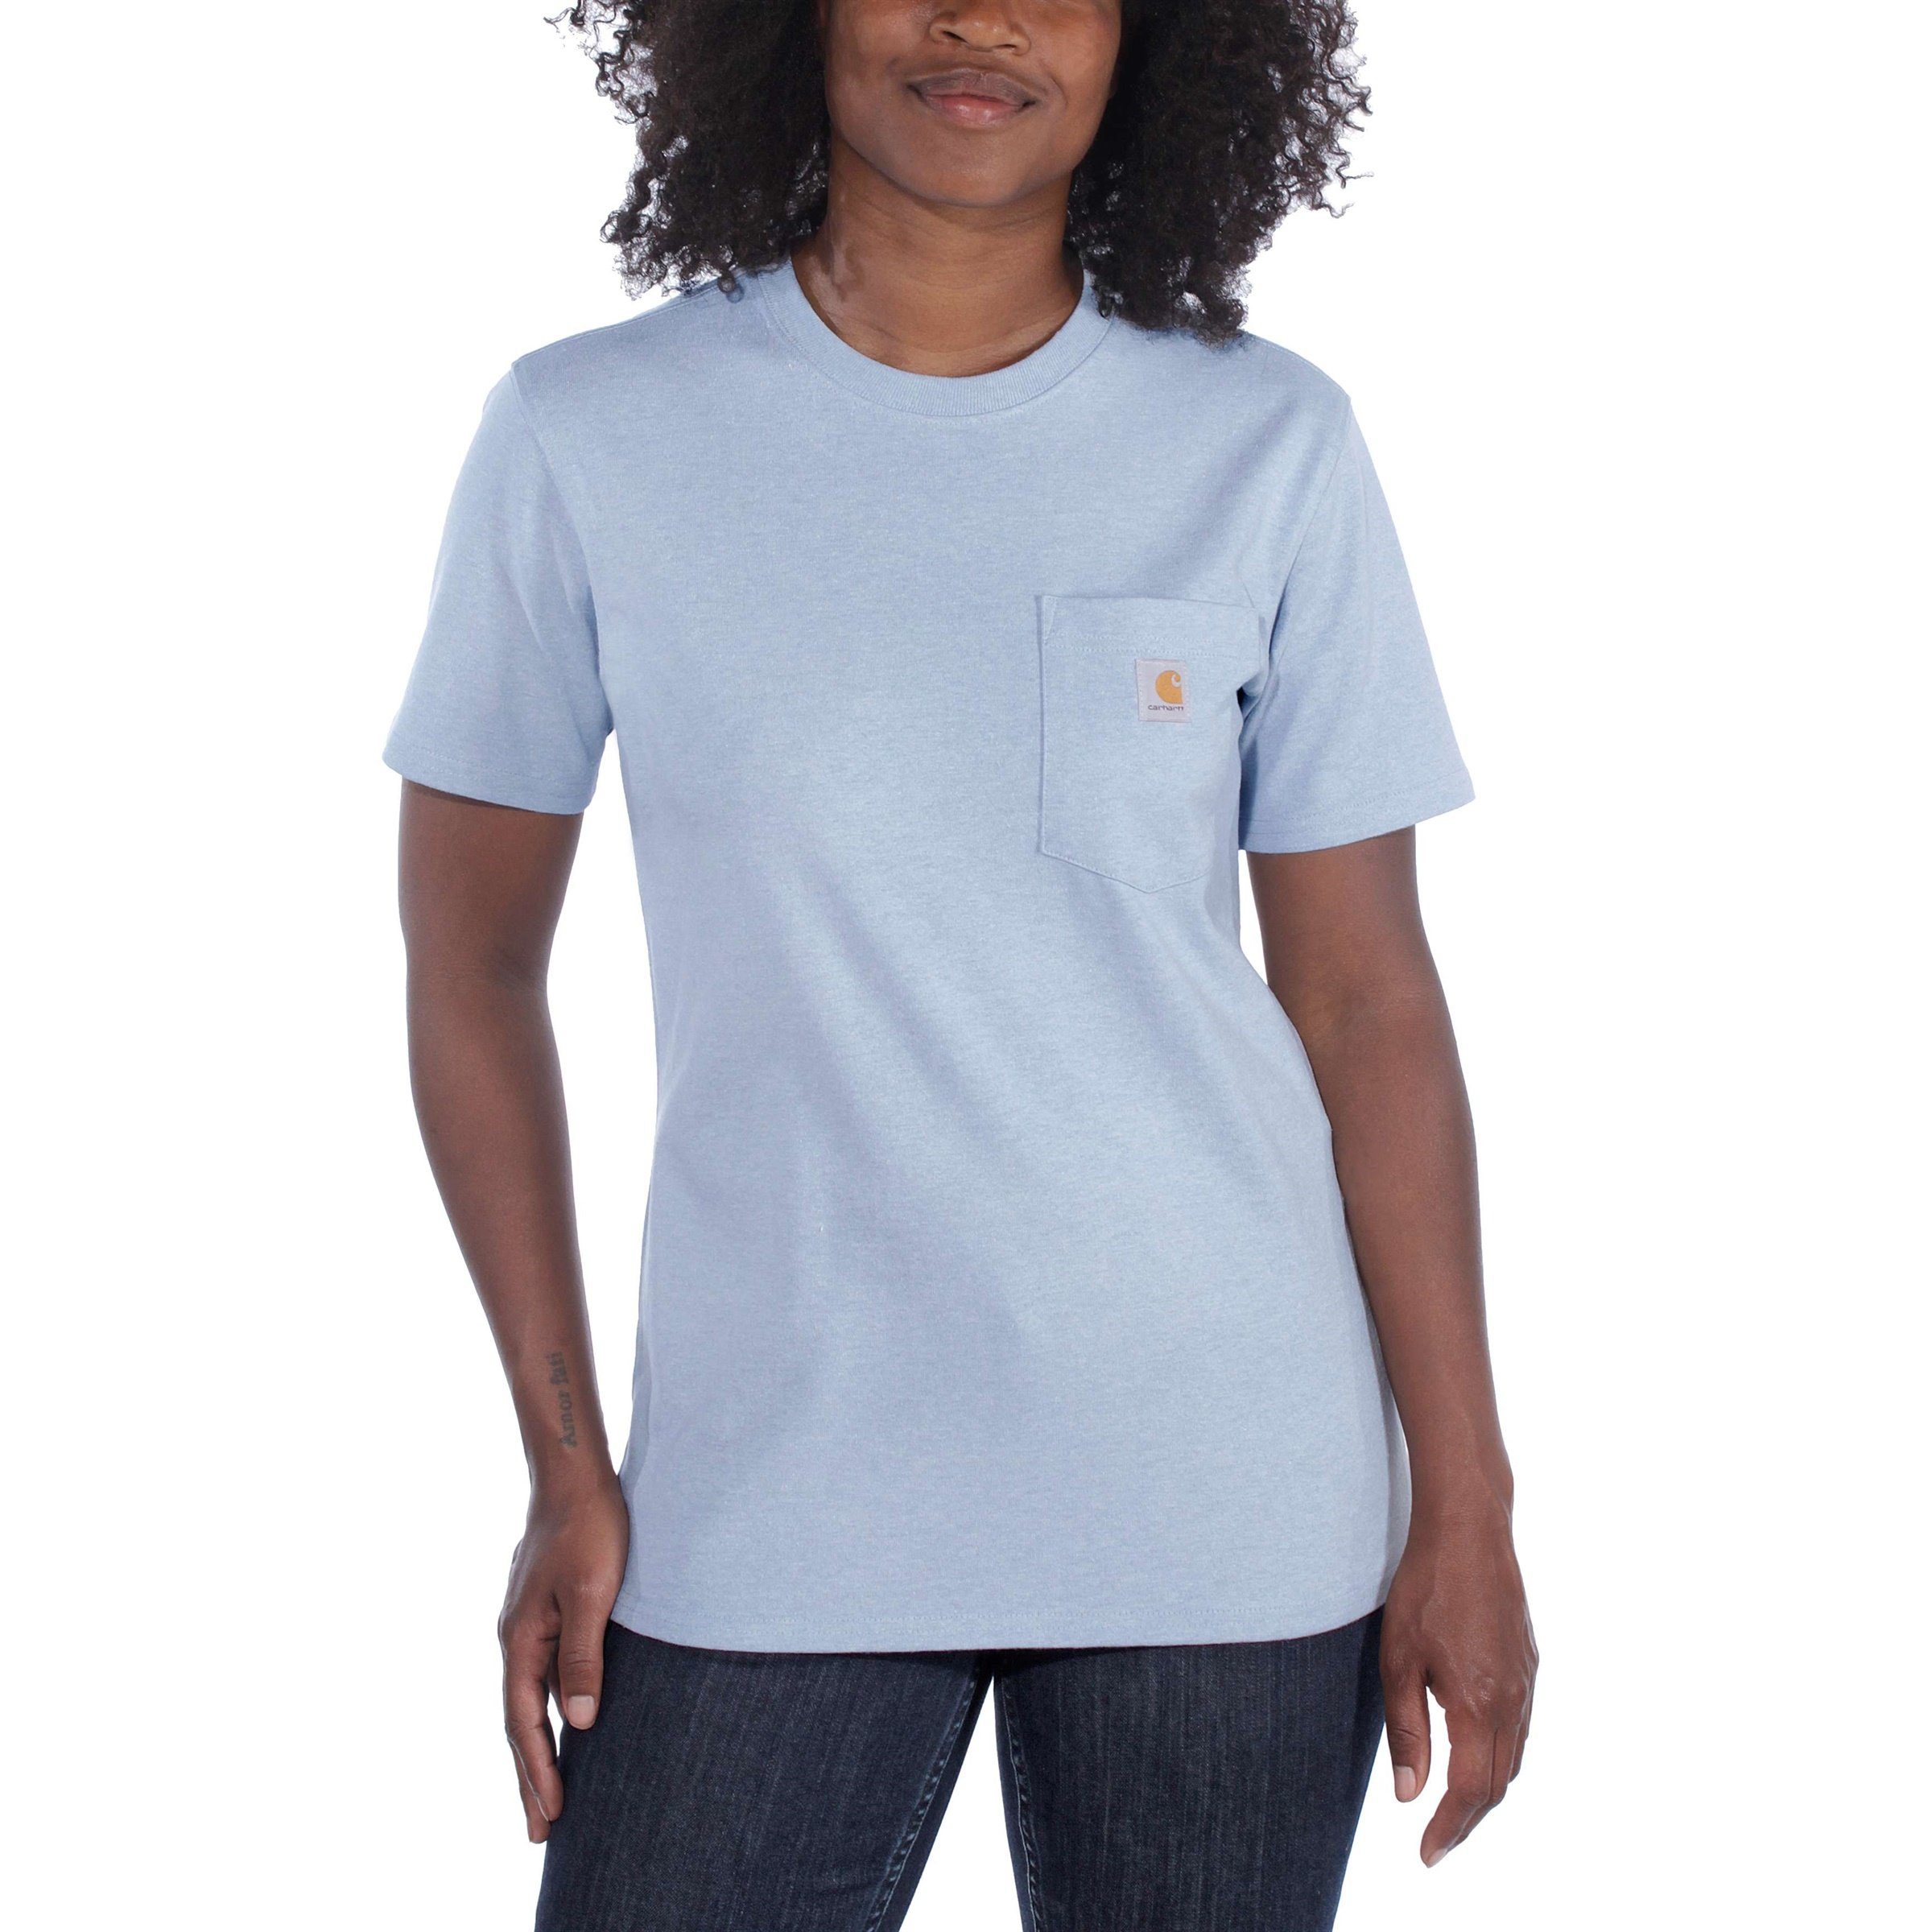 Adult Short-Sleeve T-Shirt blue Heavyweight Fit Carhartt Pocket nep Carhartt Loose T-Shirt powder Damen